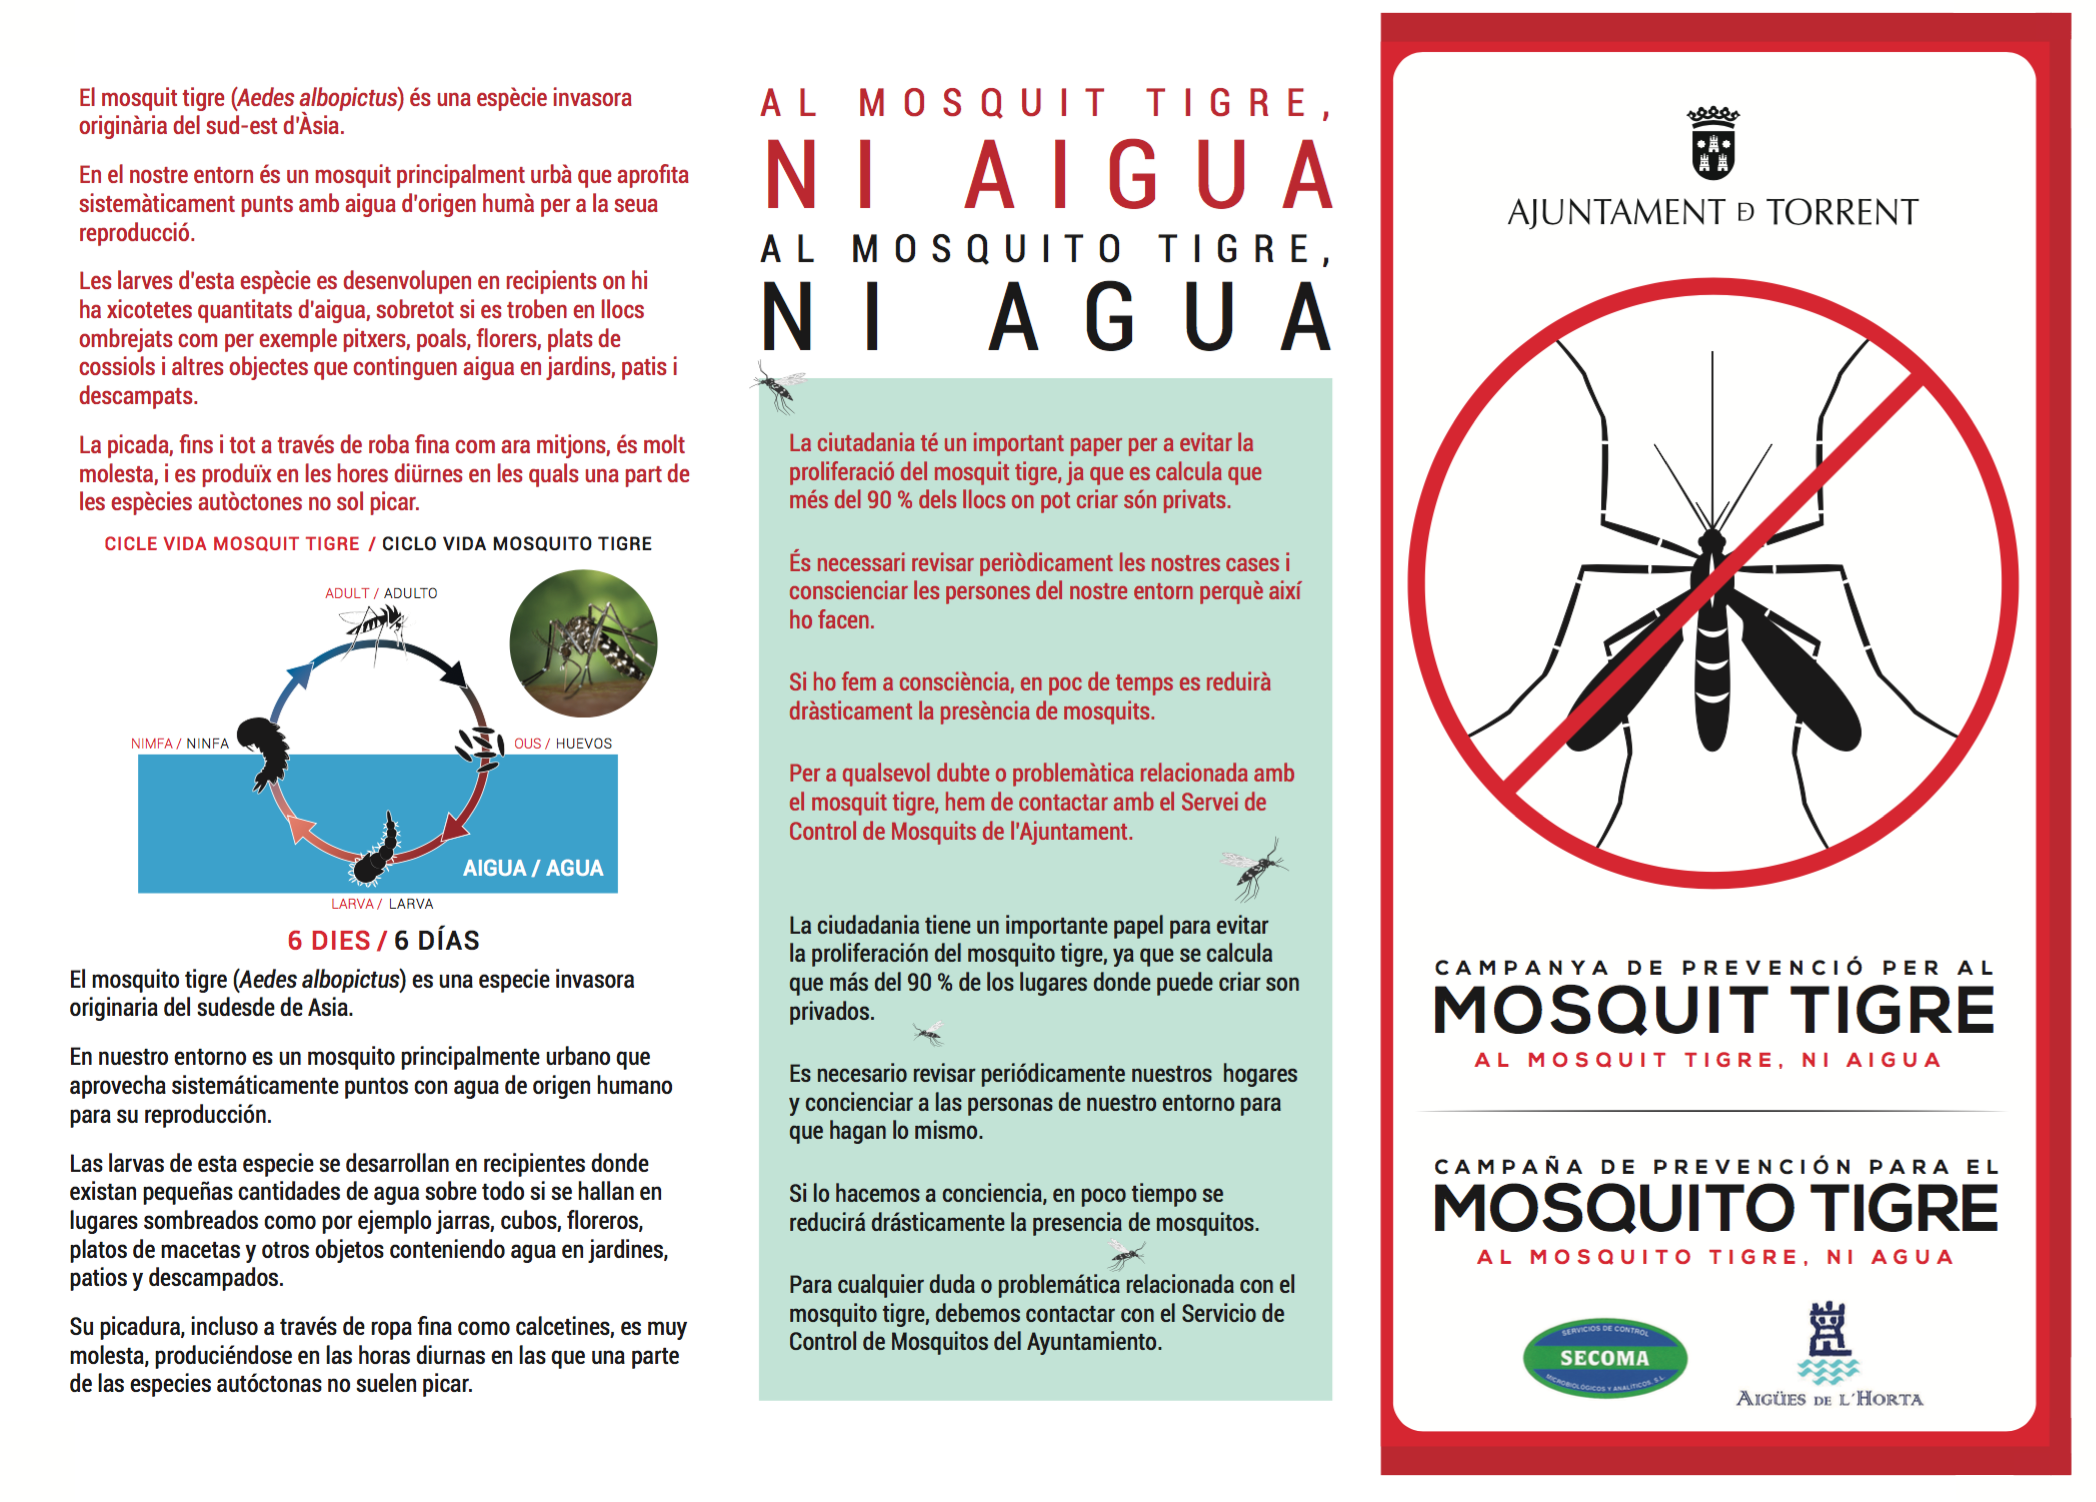 Torrent intensifica las actuaciones para combatir y eliminar al mosquito tigre